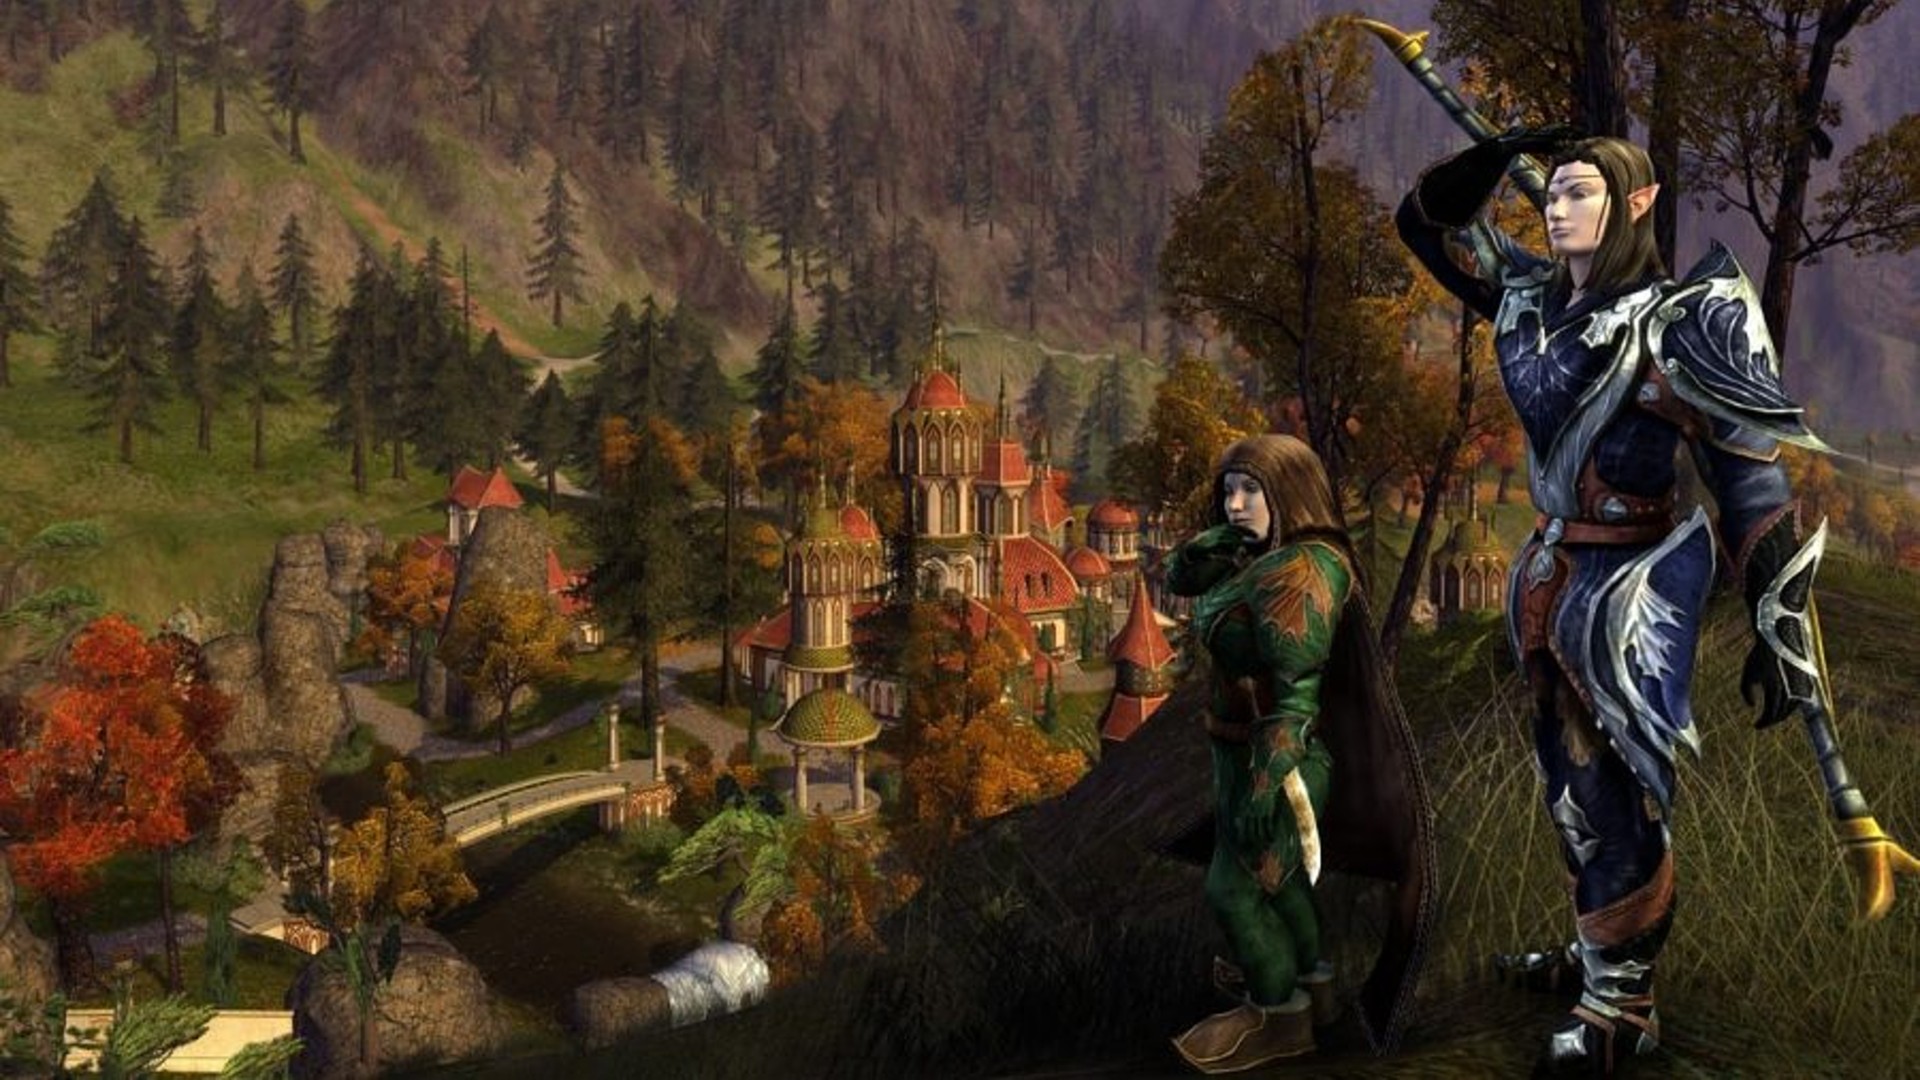 Най -добрите безплатни компютърни игри: Lord of the Rings Online. Изображението показва елф и хобит, стоящ в дърветата близо до град